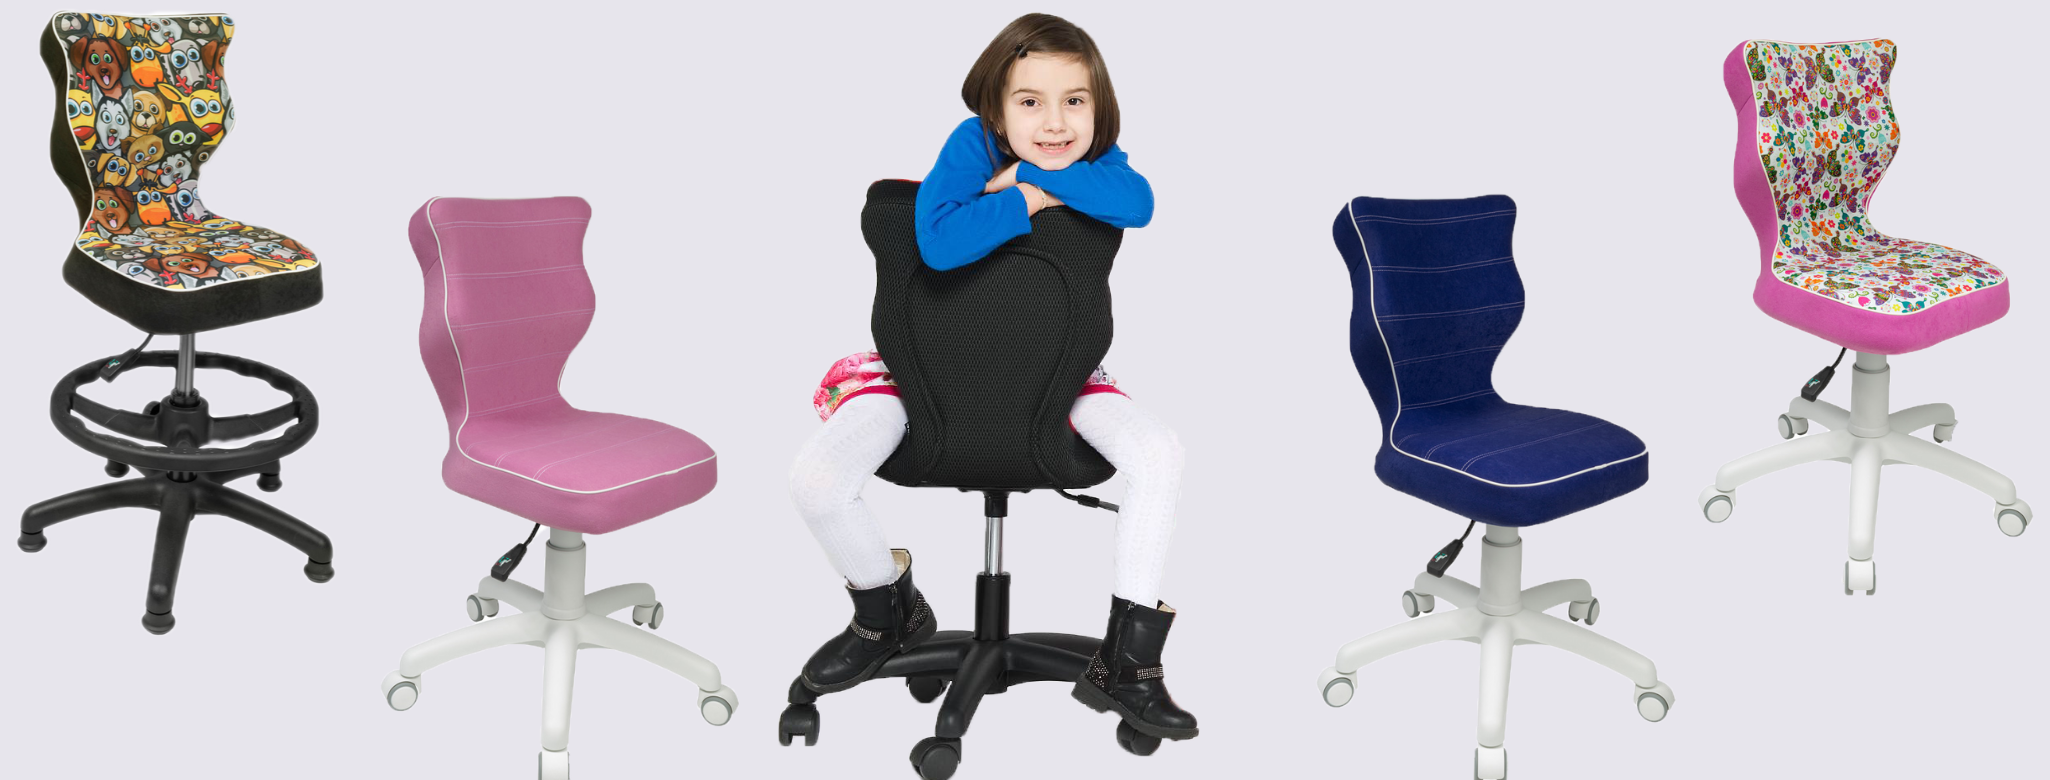 Entelo ergonomikus gyerek székek